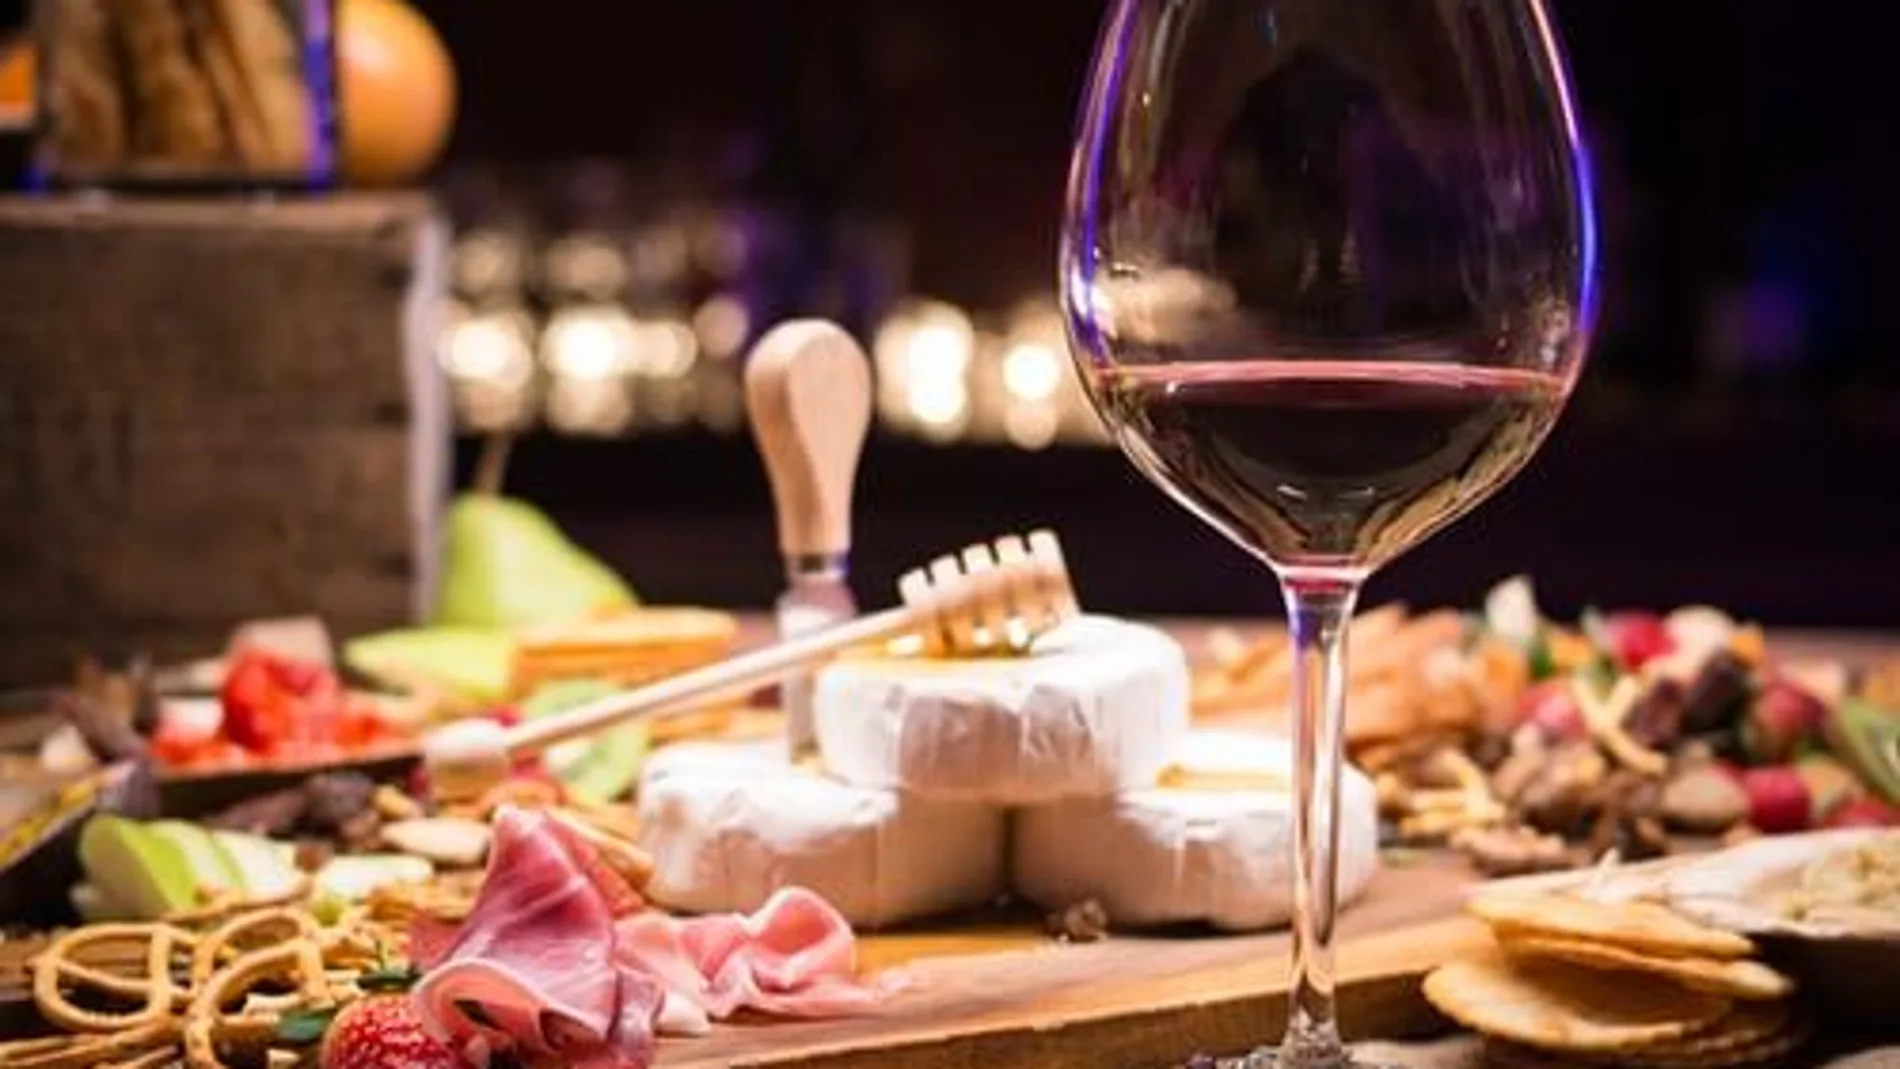 El vino es una bebida con más de 8000 años, recurrente en las celebraciones, que permite crear experiencias alrededor de la mesa y que aporta elegancia a las comidas y cenas.